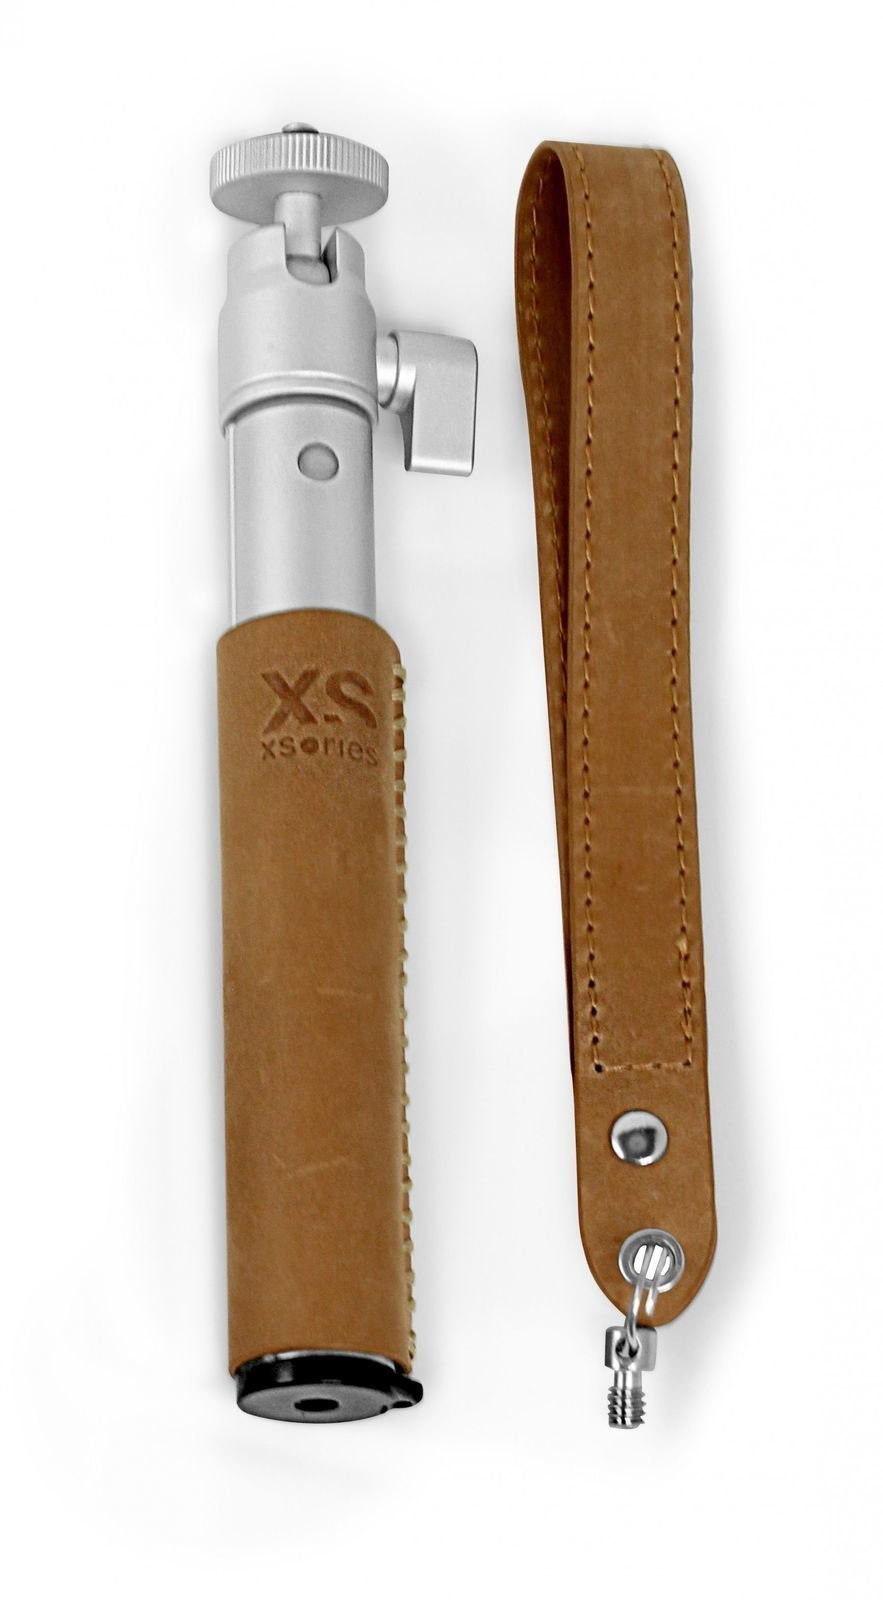 Αξεσουάρ GoPro XSories U-Shot Deluxe Leather Silver